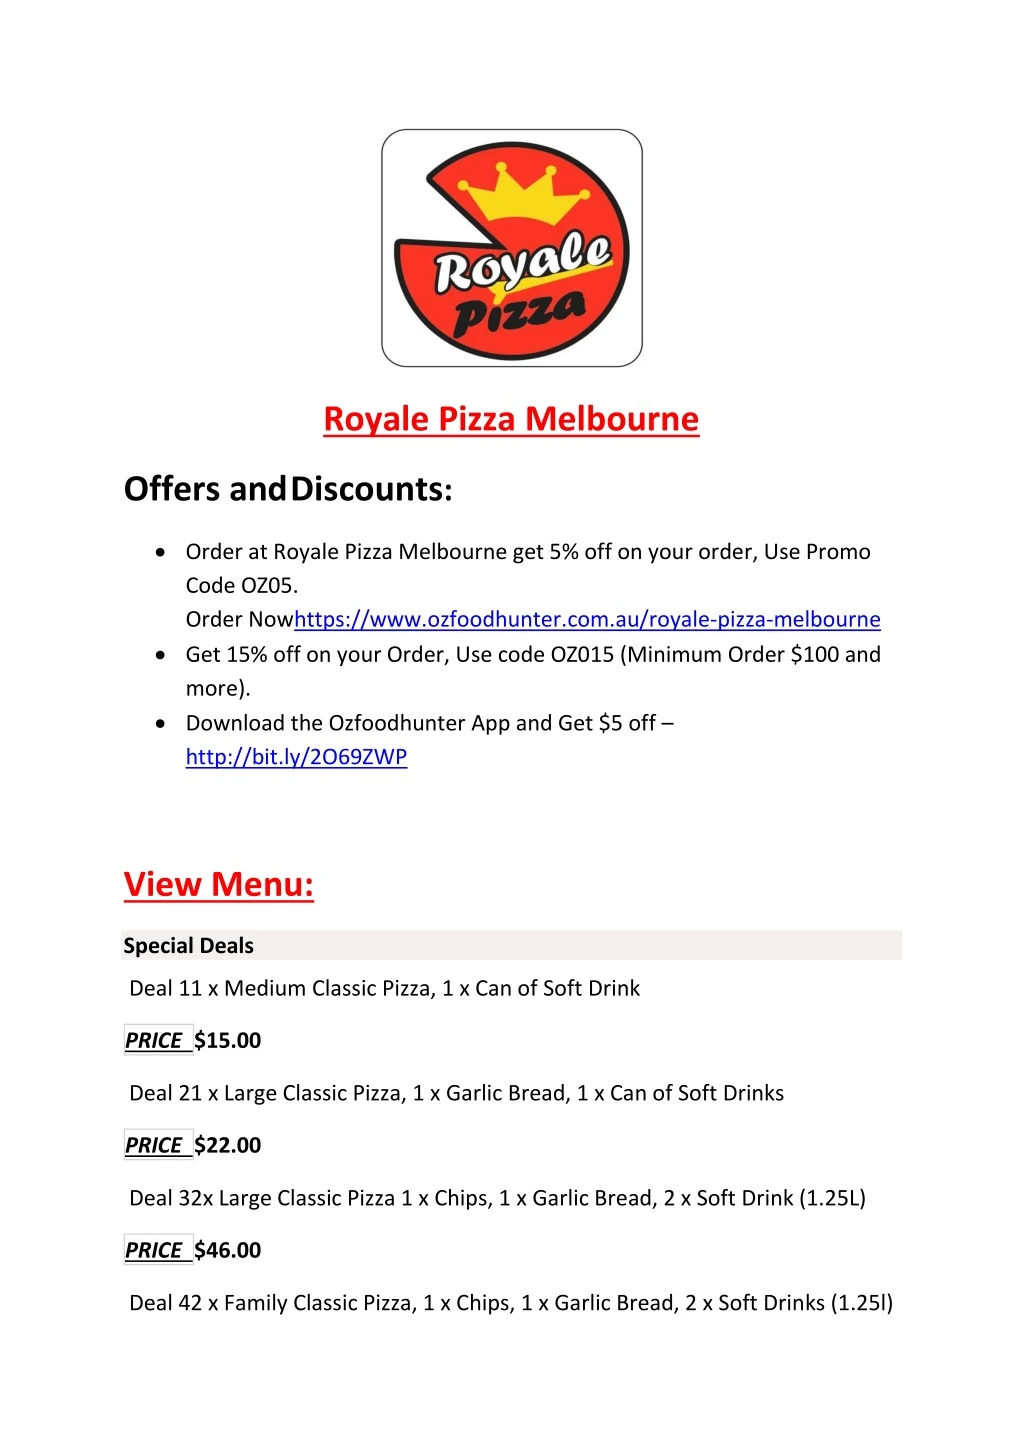 royale pizza melbourne